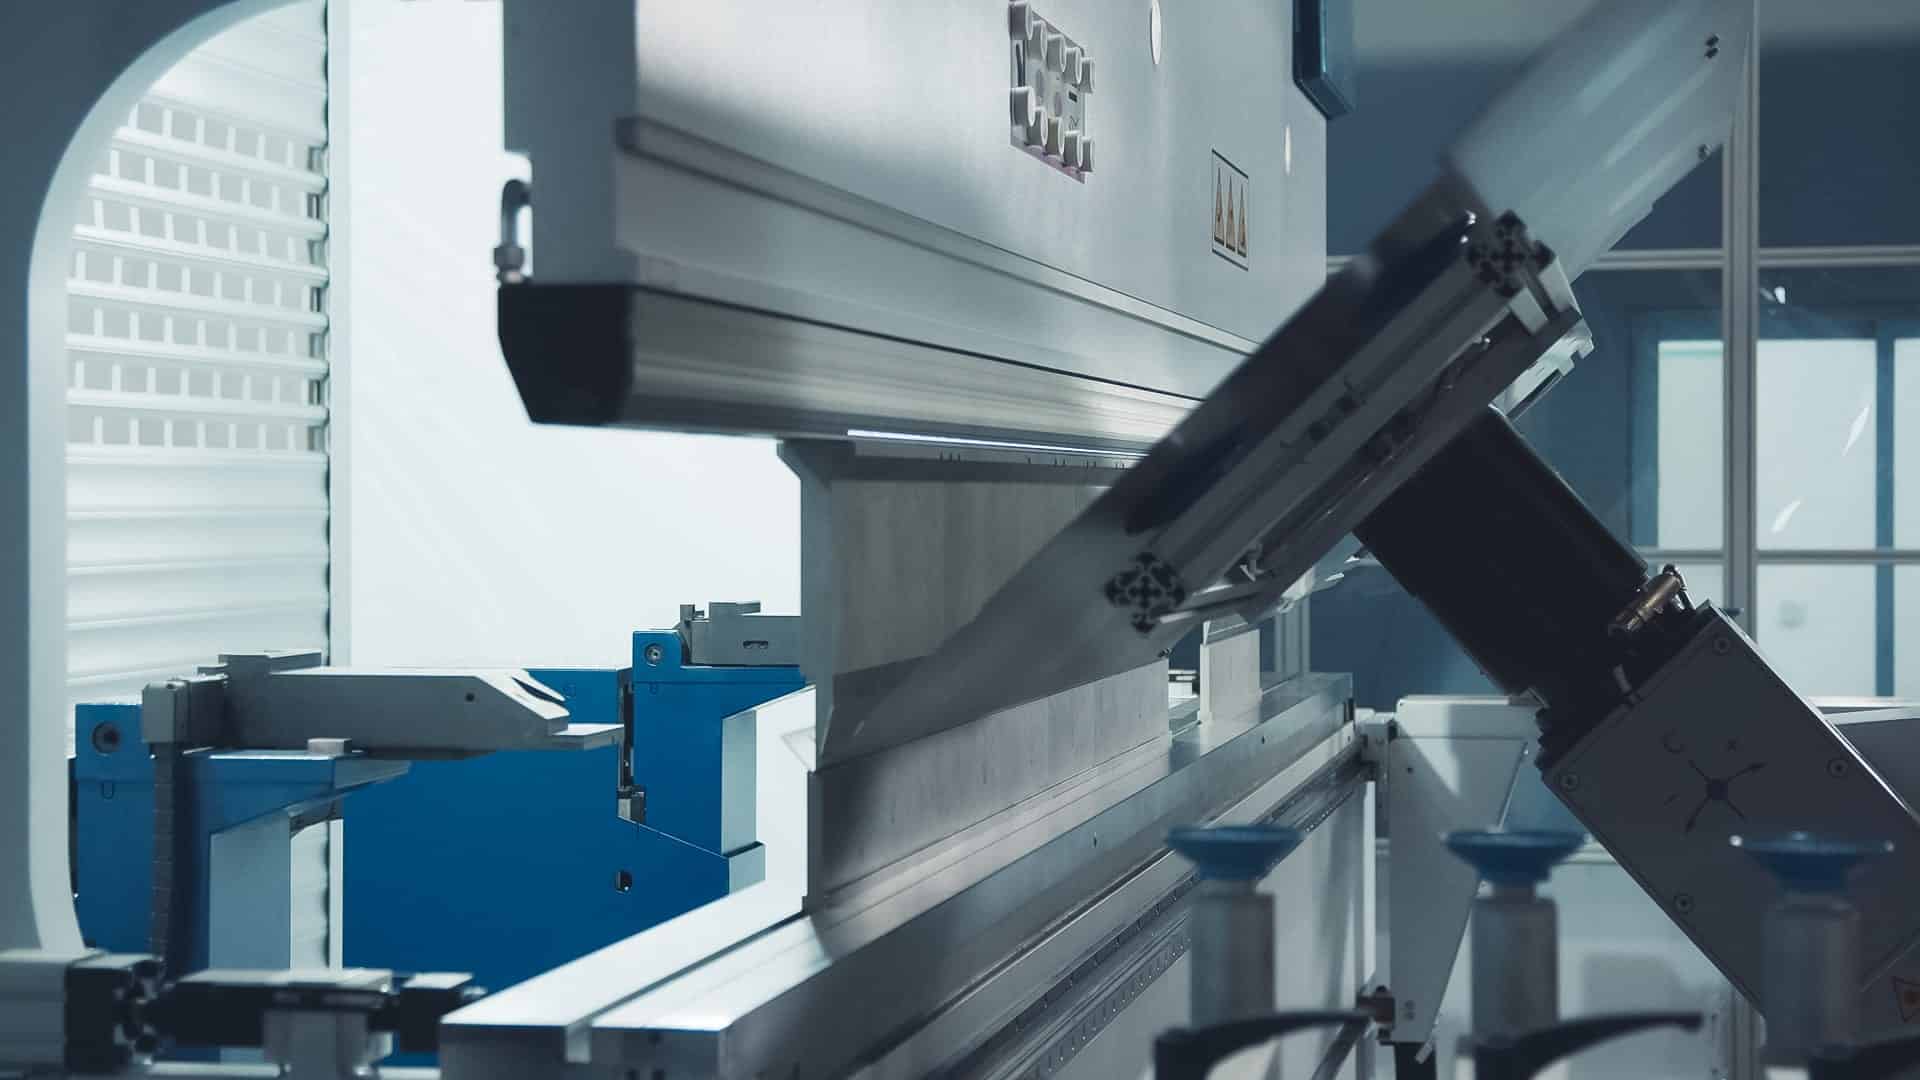 Plieuse robotisée de tôle dans une entreprise de métallerie